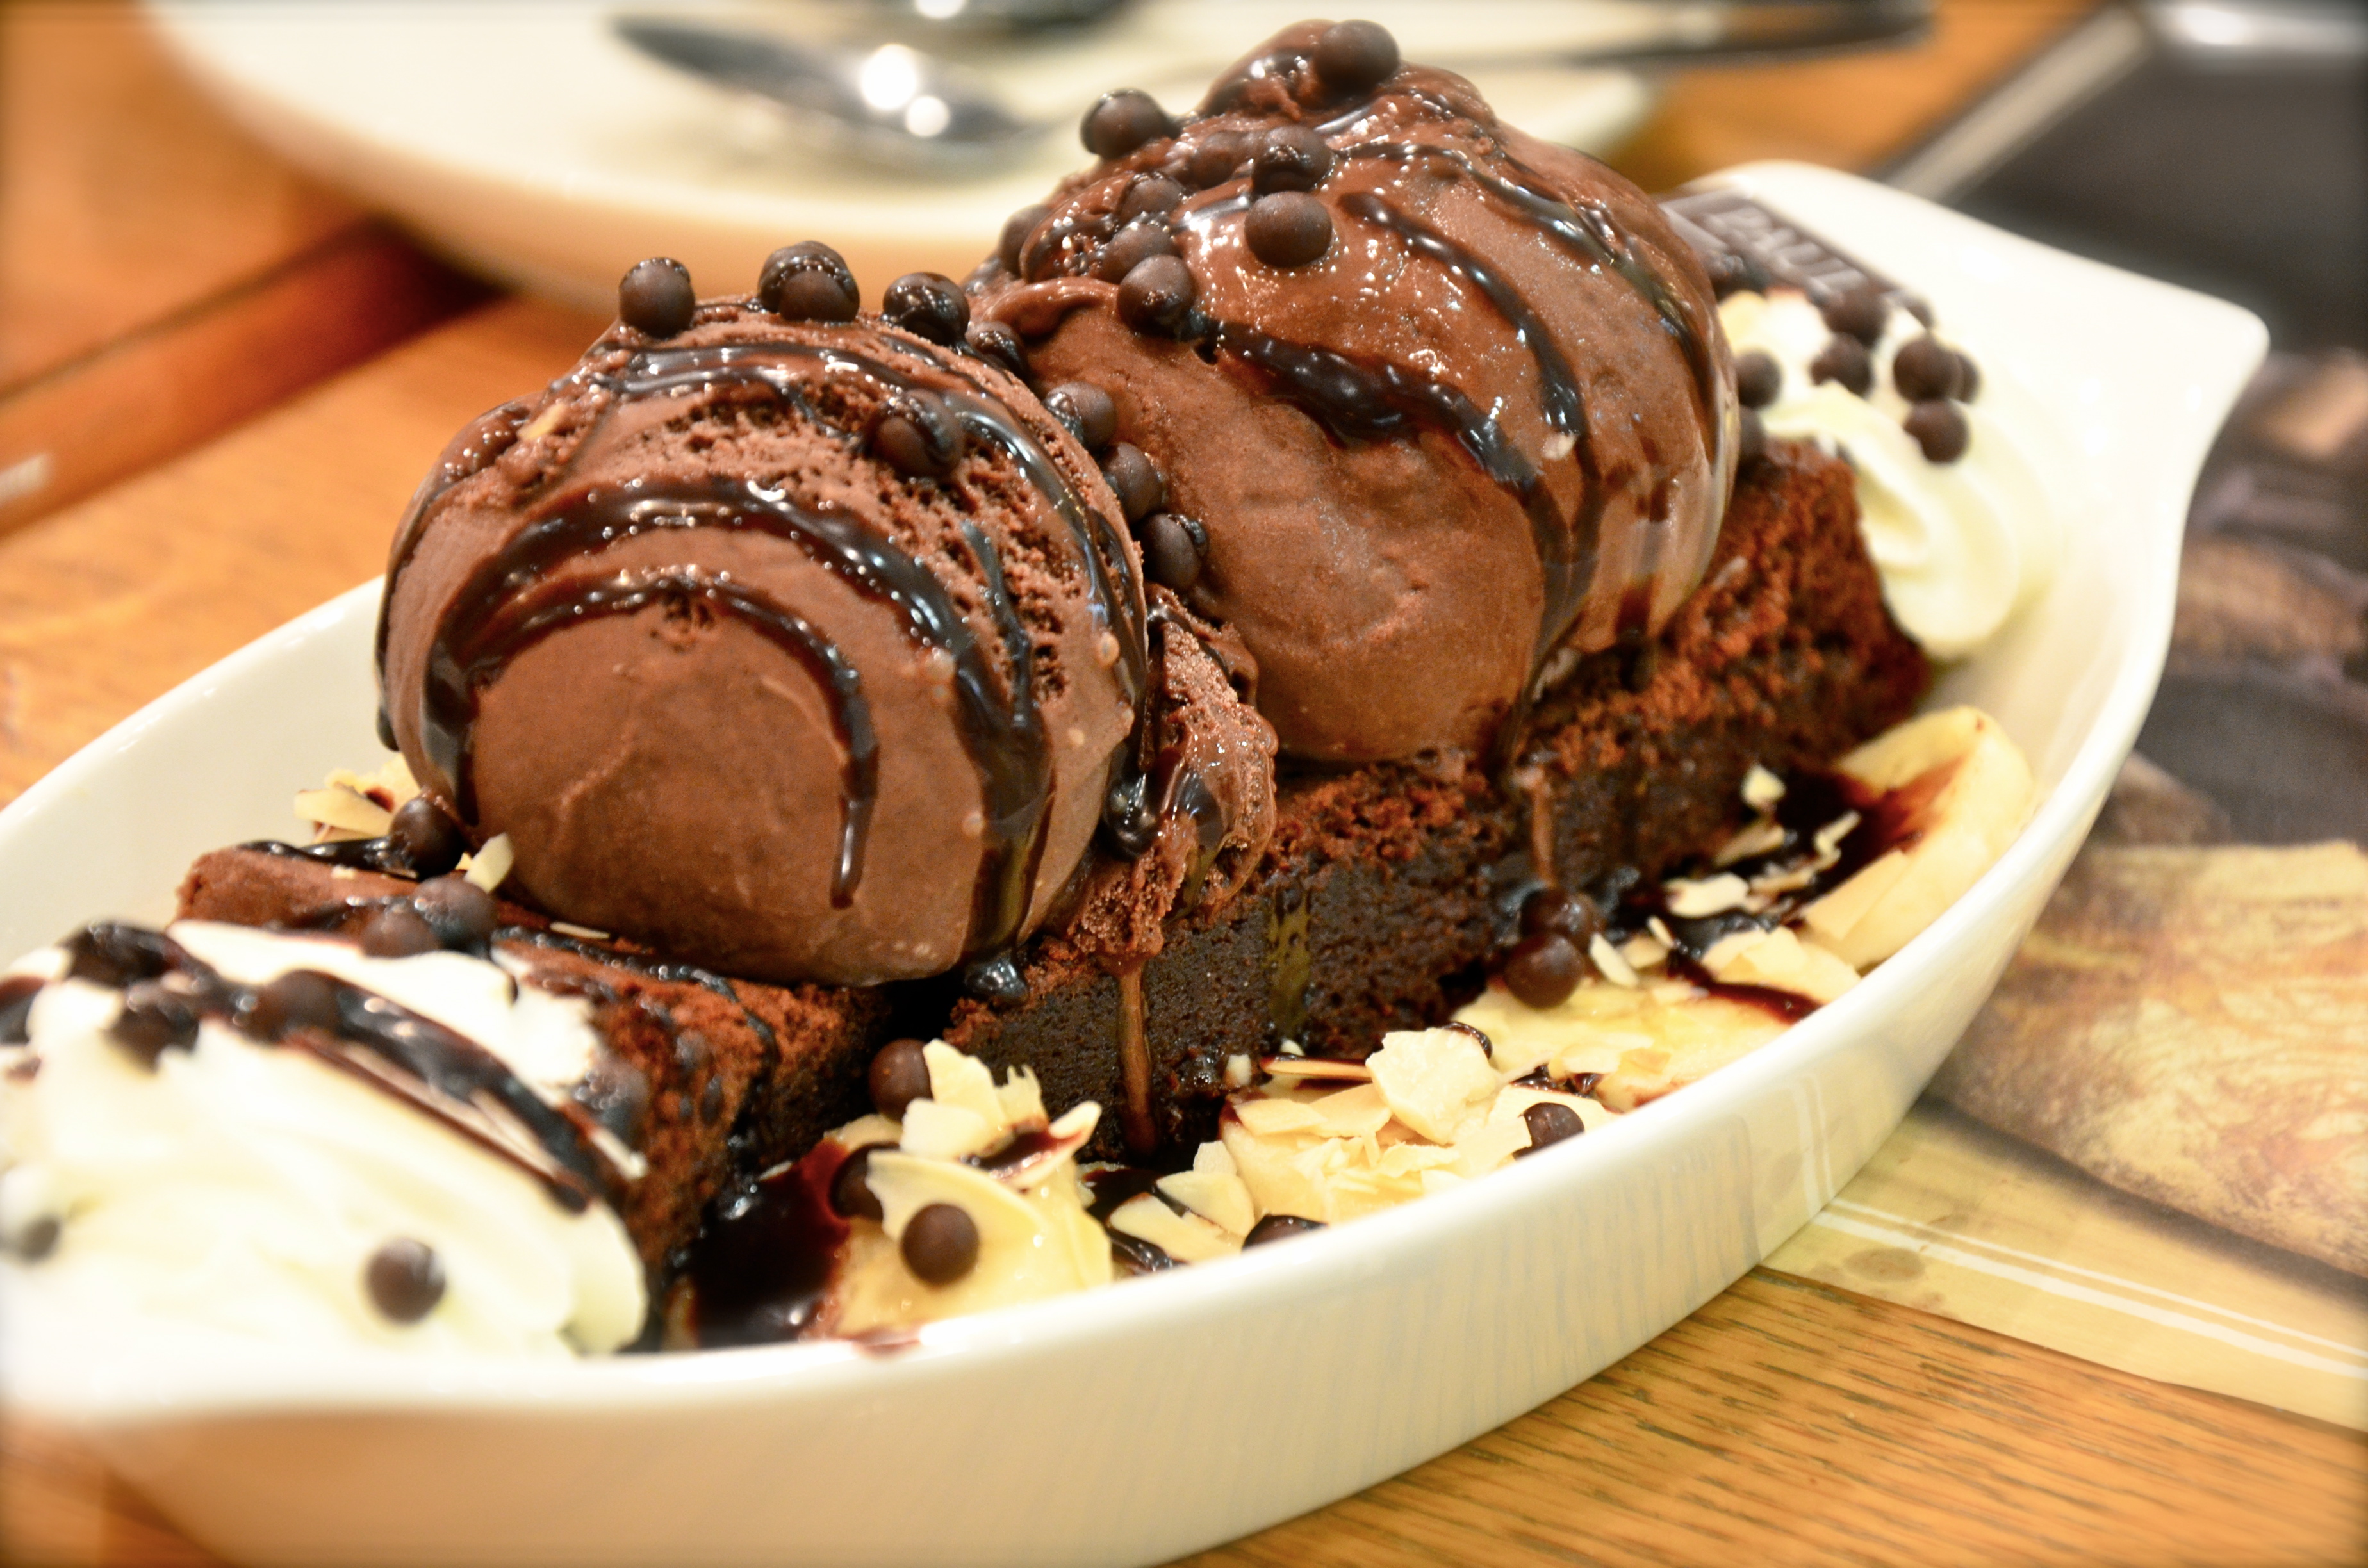 Choco ice. Мороженое шоколадный Брауни. Шоколадный Брауни с мороженым. Айс Чоко, шоколадное мороженое. Мороженое с шоколадом.